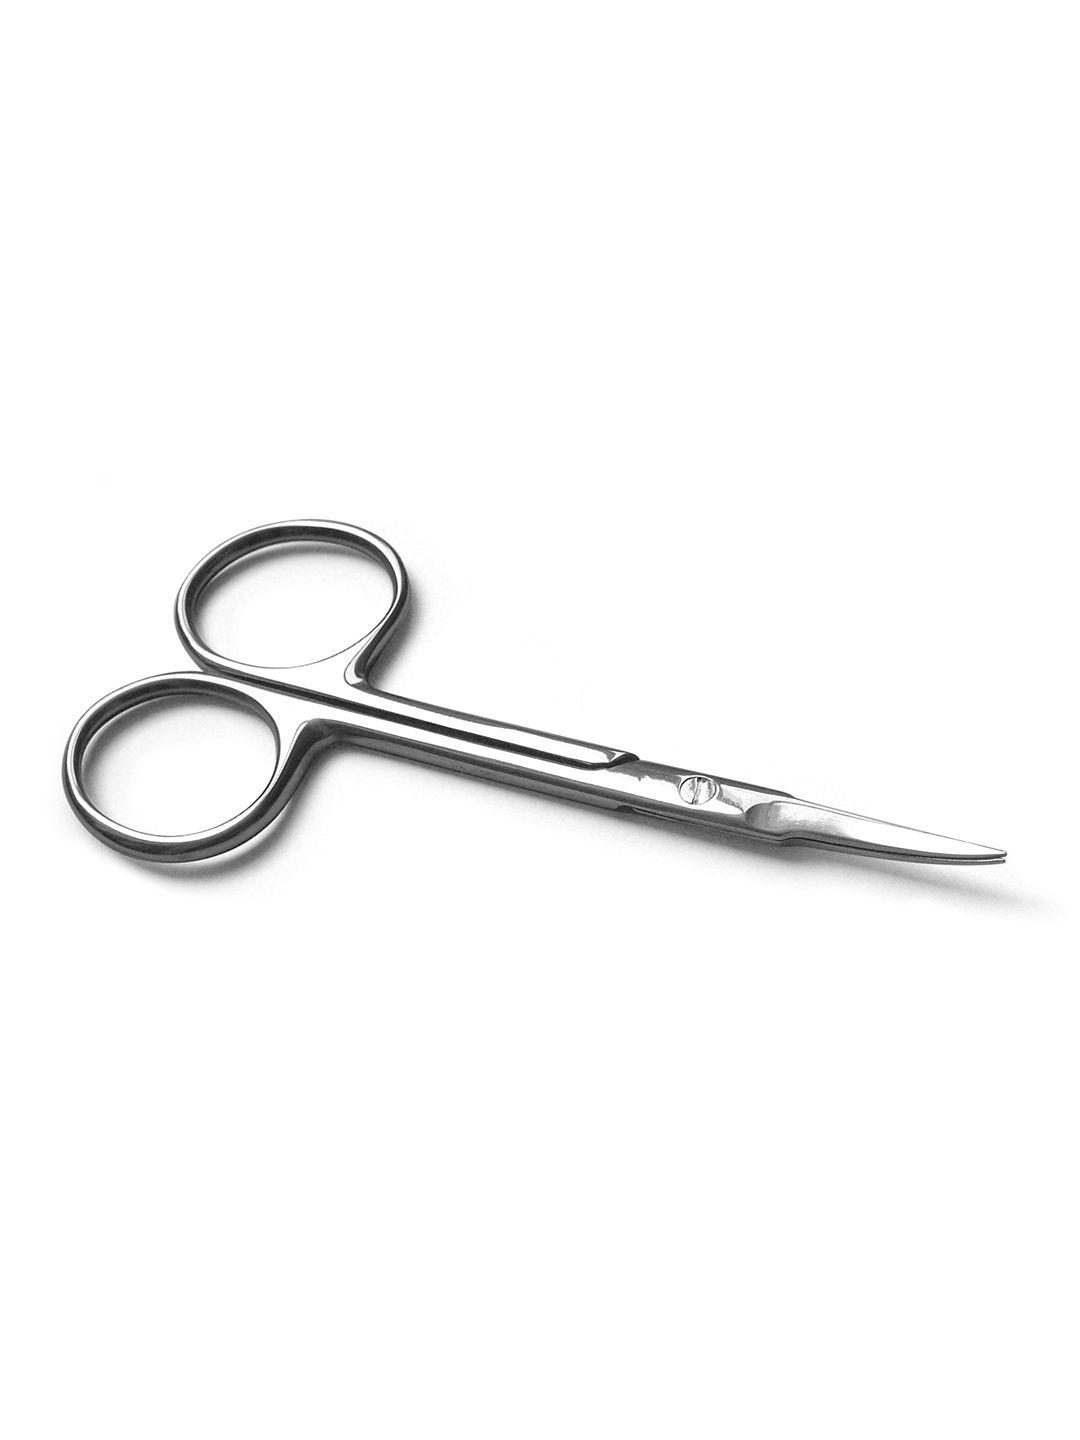 basicare silver bc euro cuticle scissor